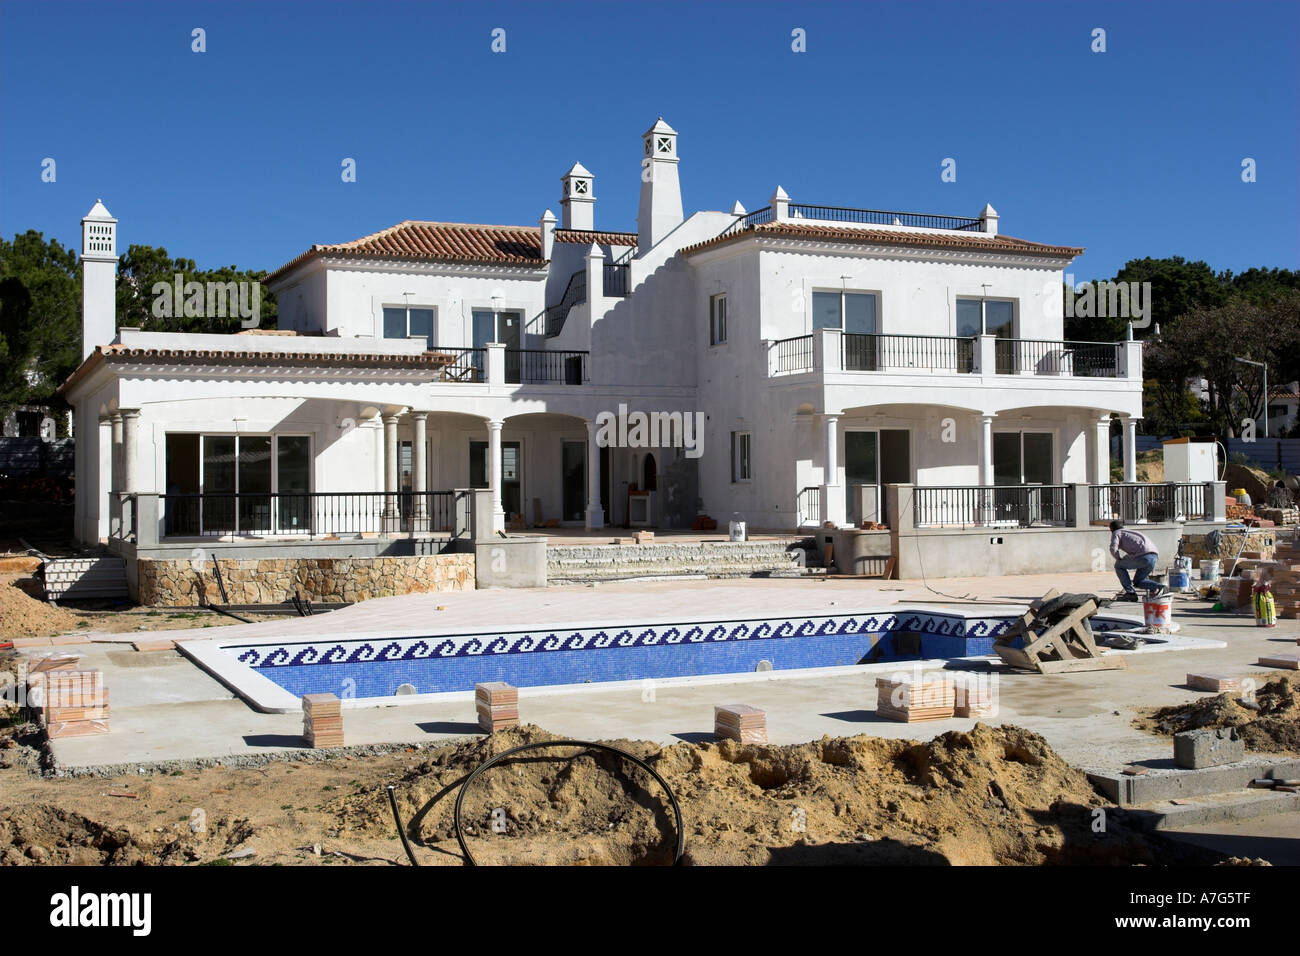 Le développement de luxe d'une toute nouvelle villa avec une grande piscine et une terrasse, Algarve, Portugal. Banque D'Images